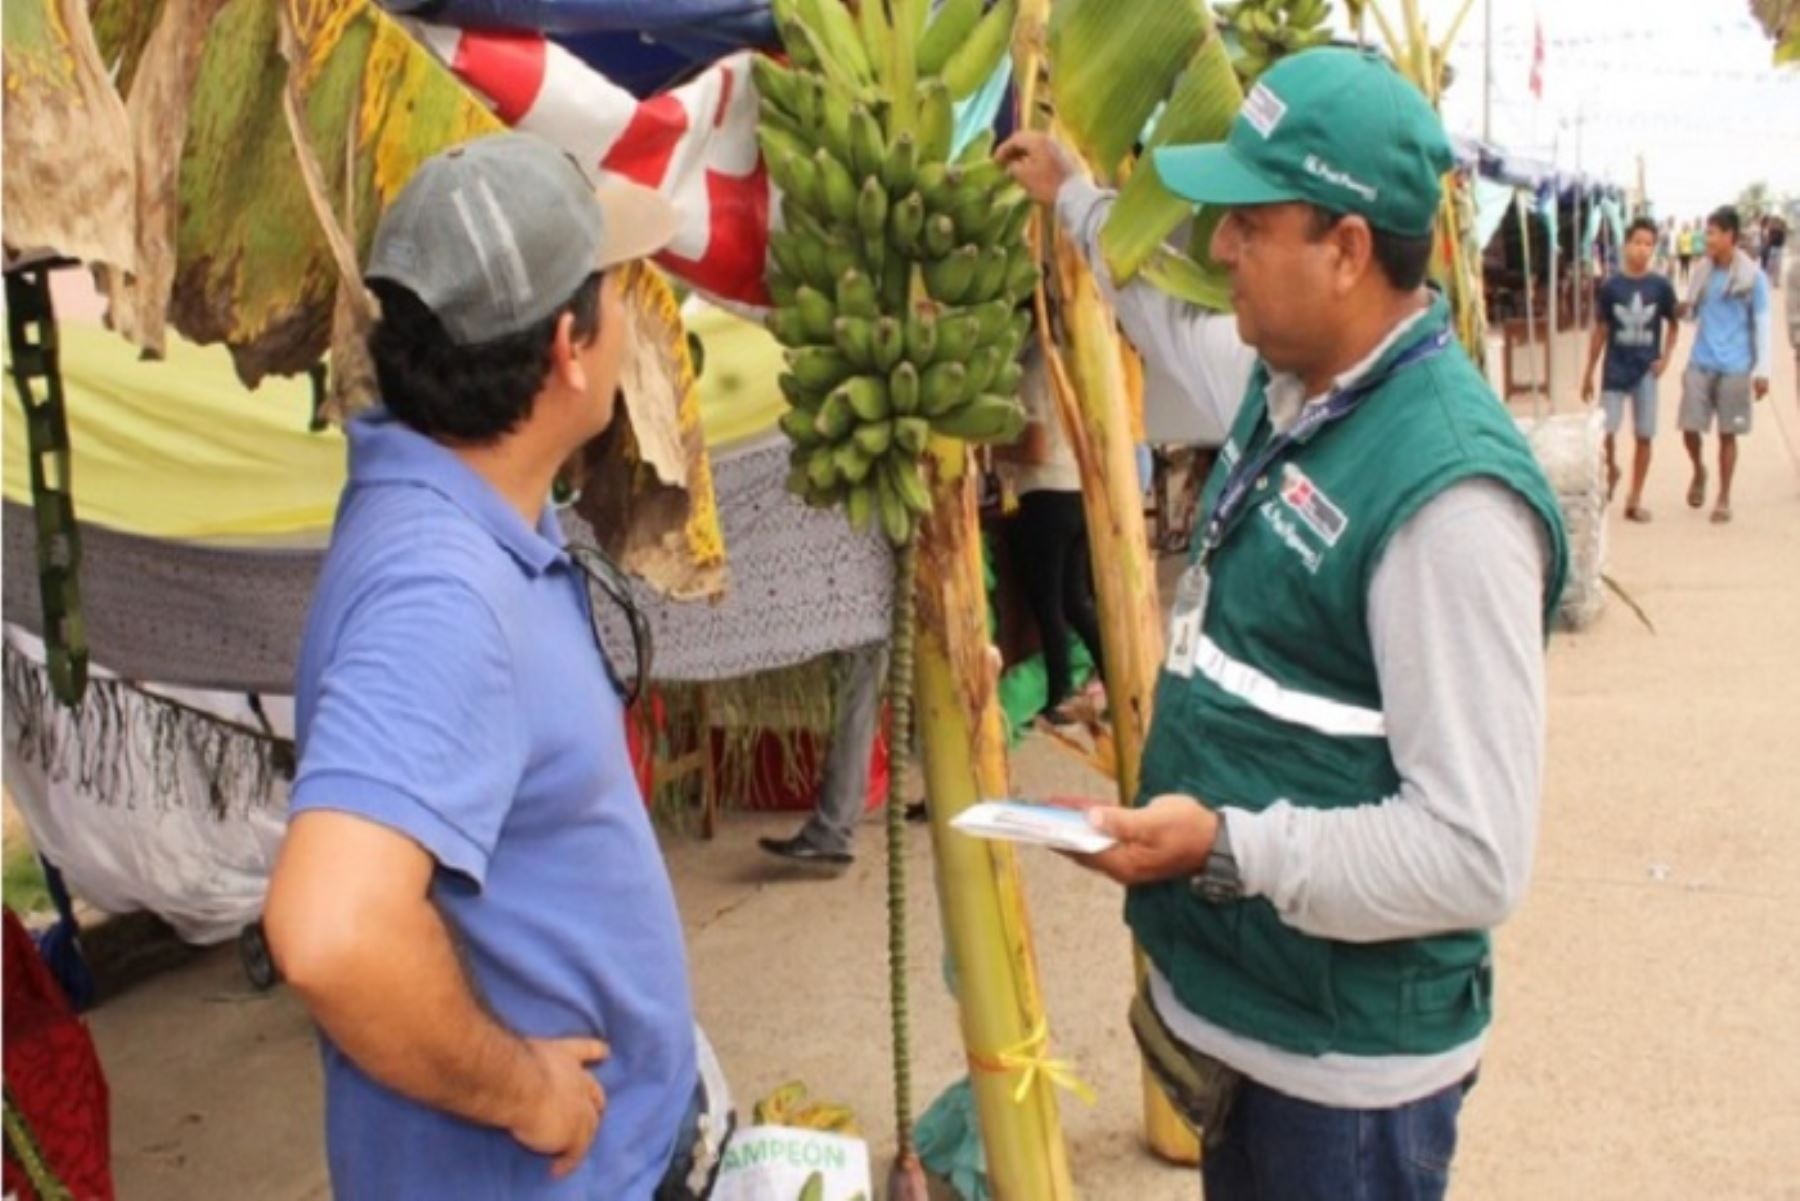 El ingreso y establecimiento de esta plaga en el Perú ocasionaría impactos económicos en la producción de 30,000 hectáreas de banano, que en su mayoría tienen certificación orgánica para la agroexportación.